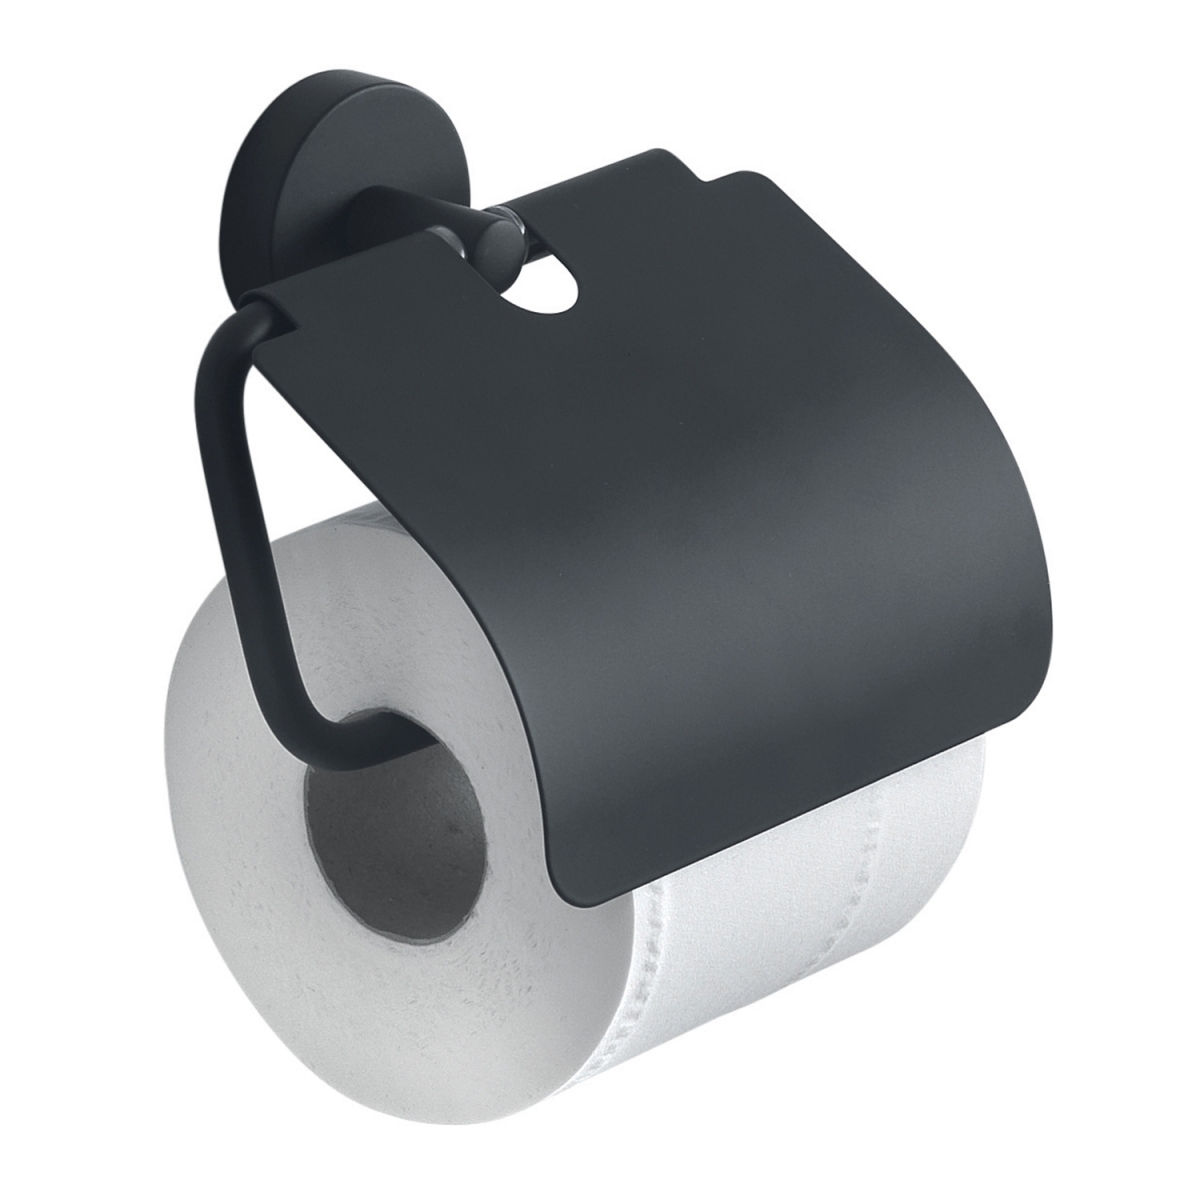 Portarrollos de papel higiénico individual con kit de montaje incluido  fabricado en metal color negro Erlo